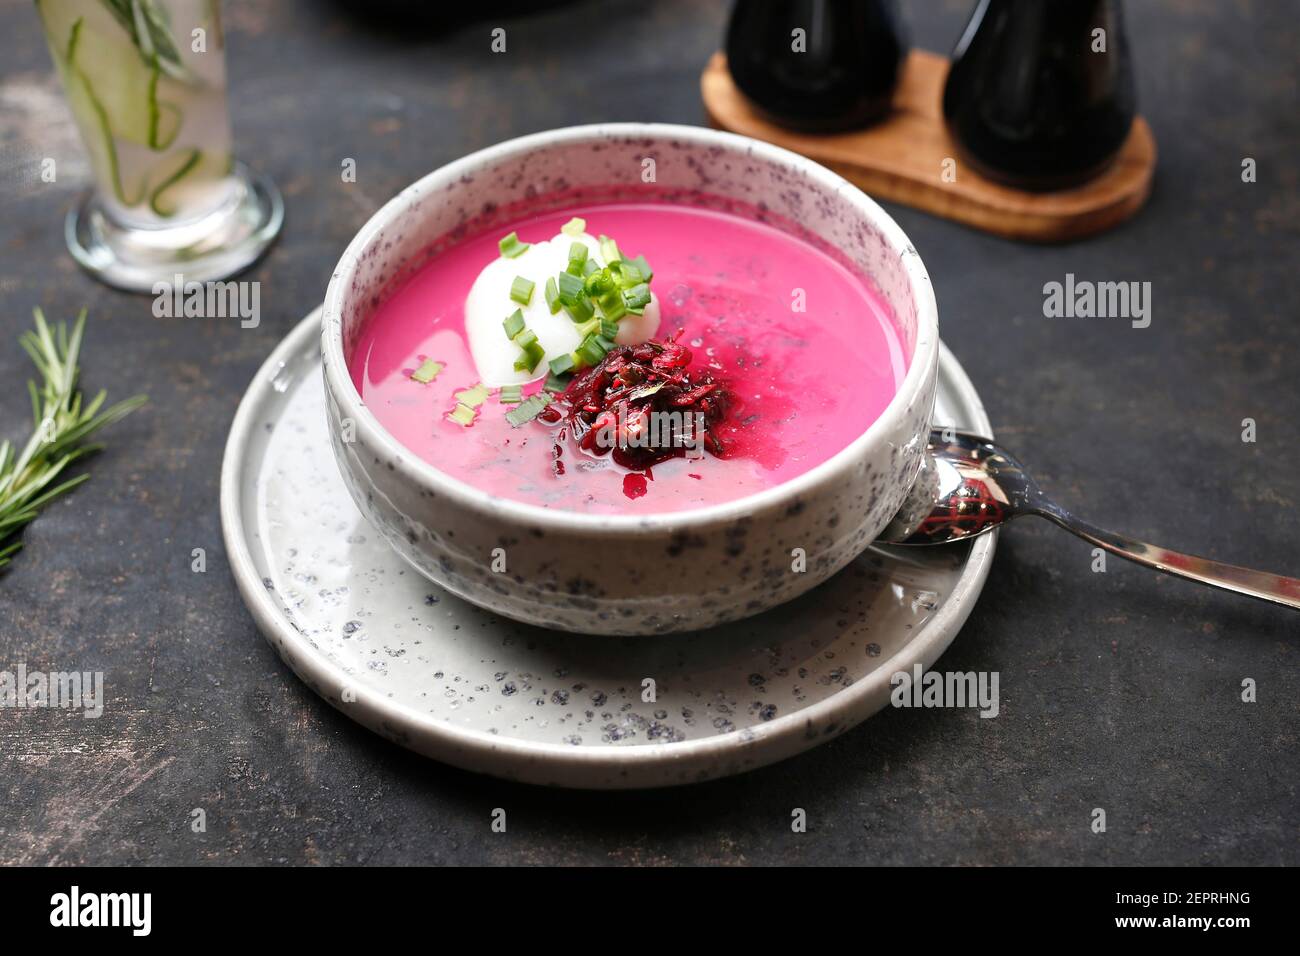 Rote Beete Suppe mit Sahne und Schnittlauch. Essen auf einem Teller serviert, Essen Styling, Serviervorschläge, kulinarische Fotografie. Stockfoto